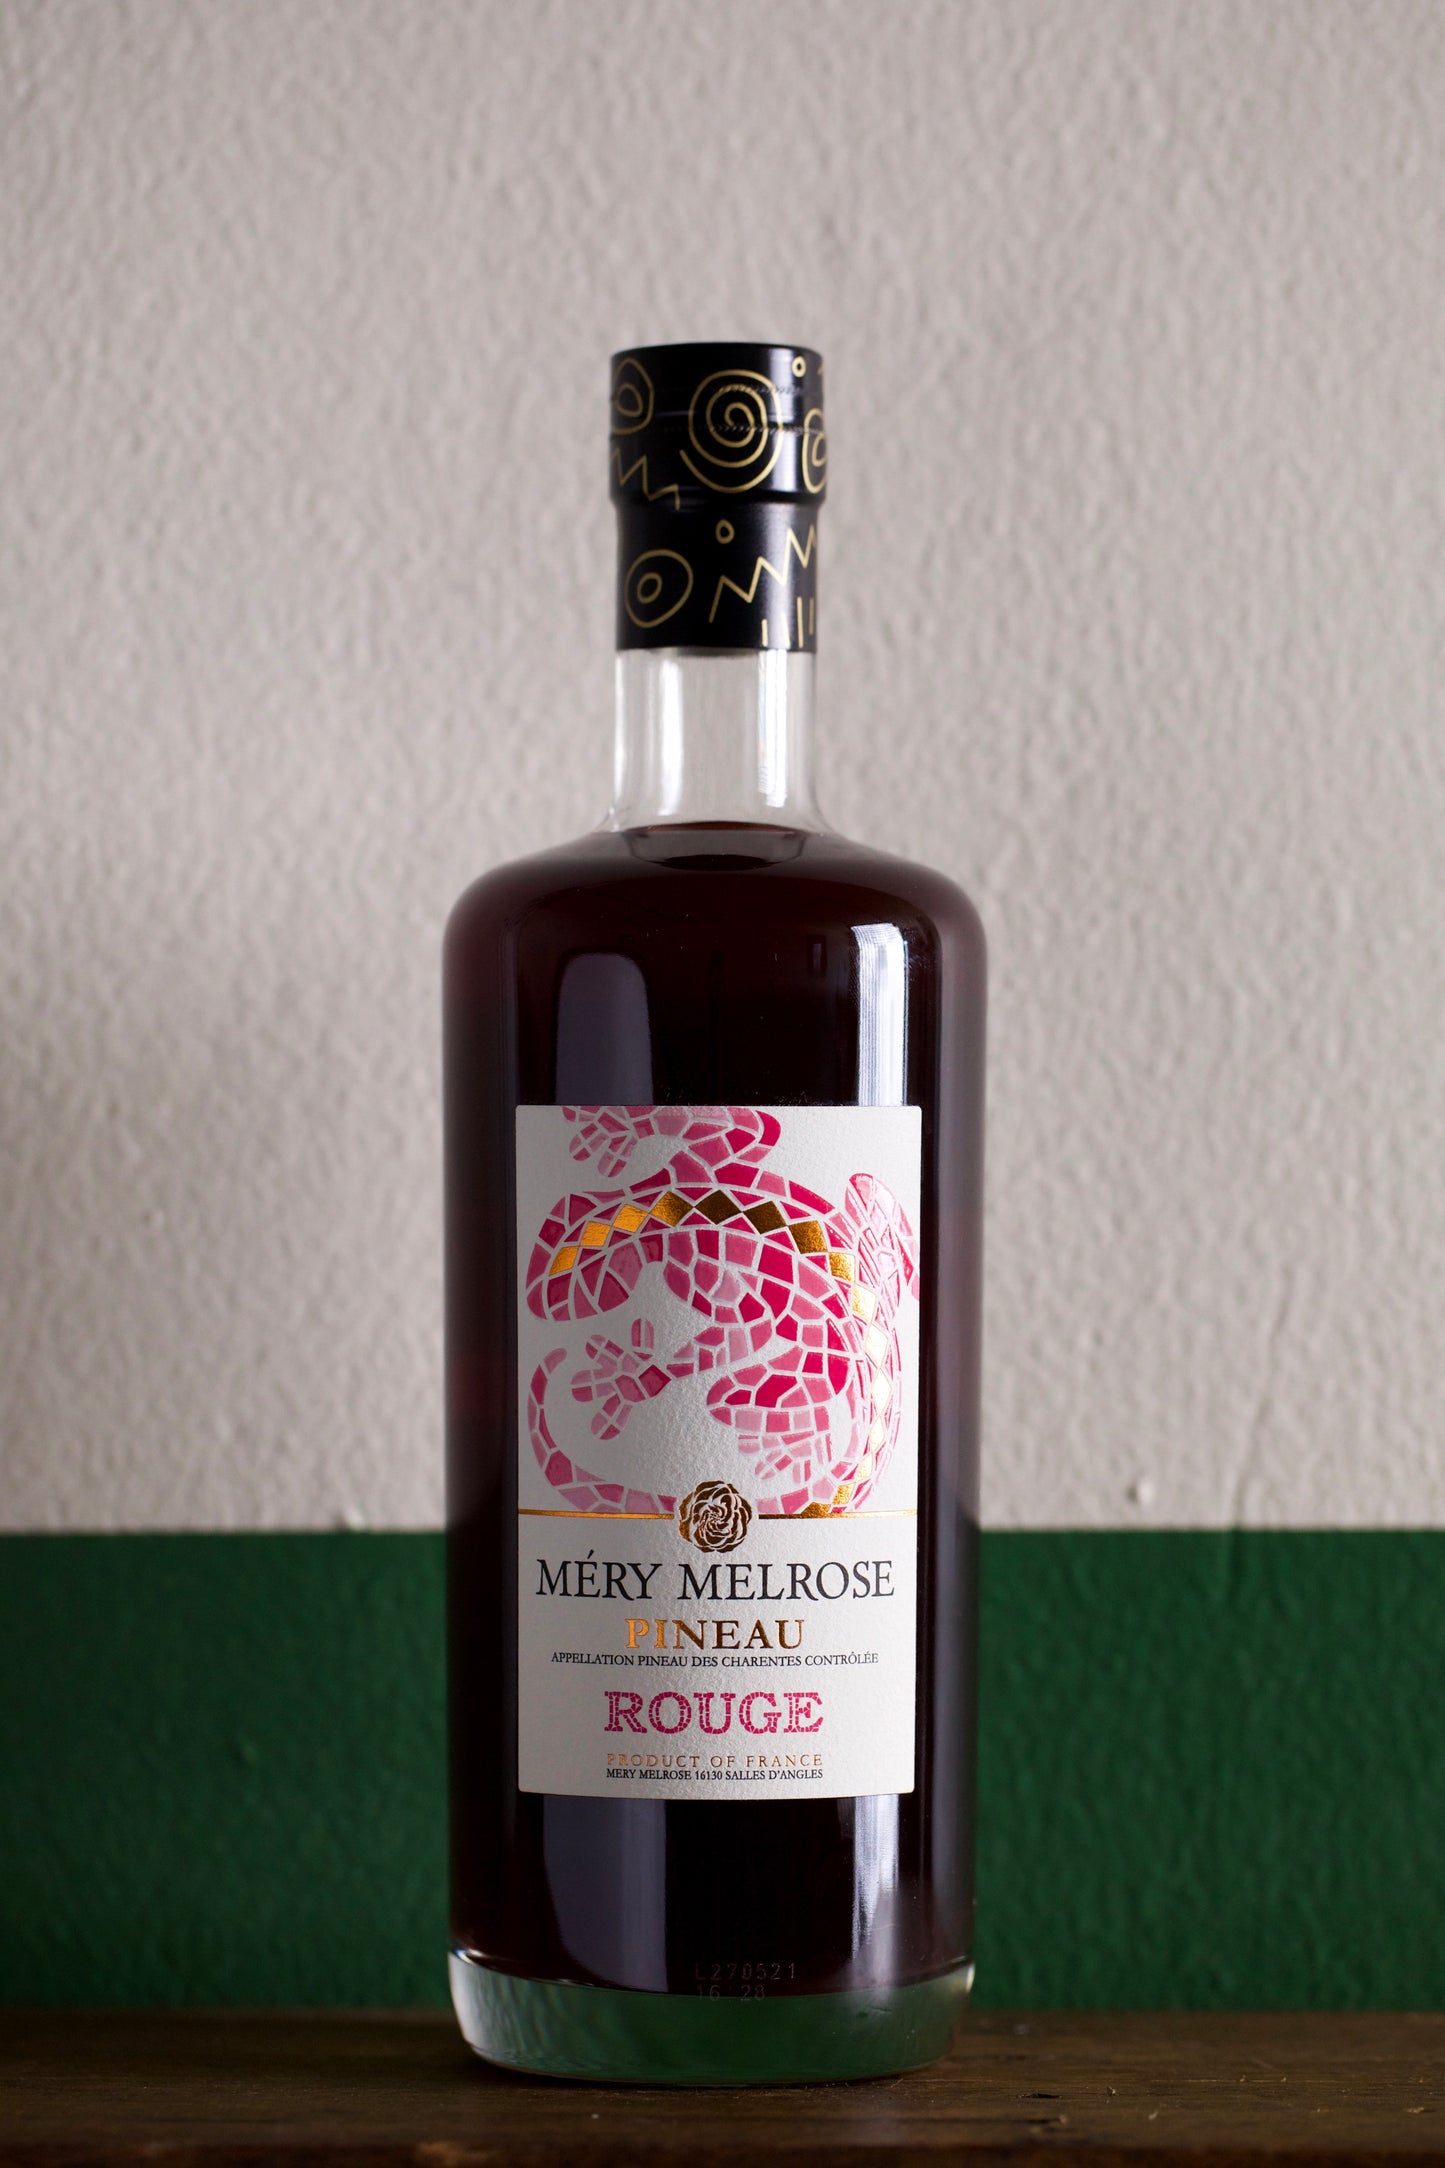 Bottle of Mery Melrose Pineau Rouge Mistelle 750ml